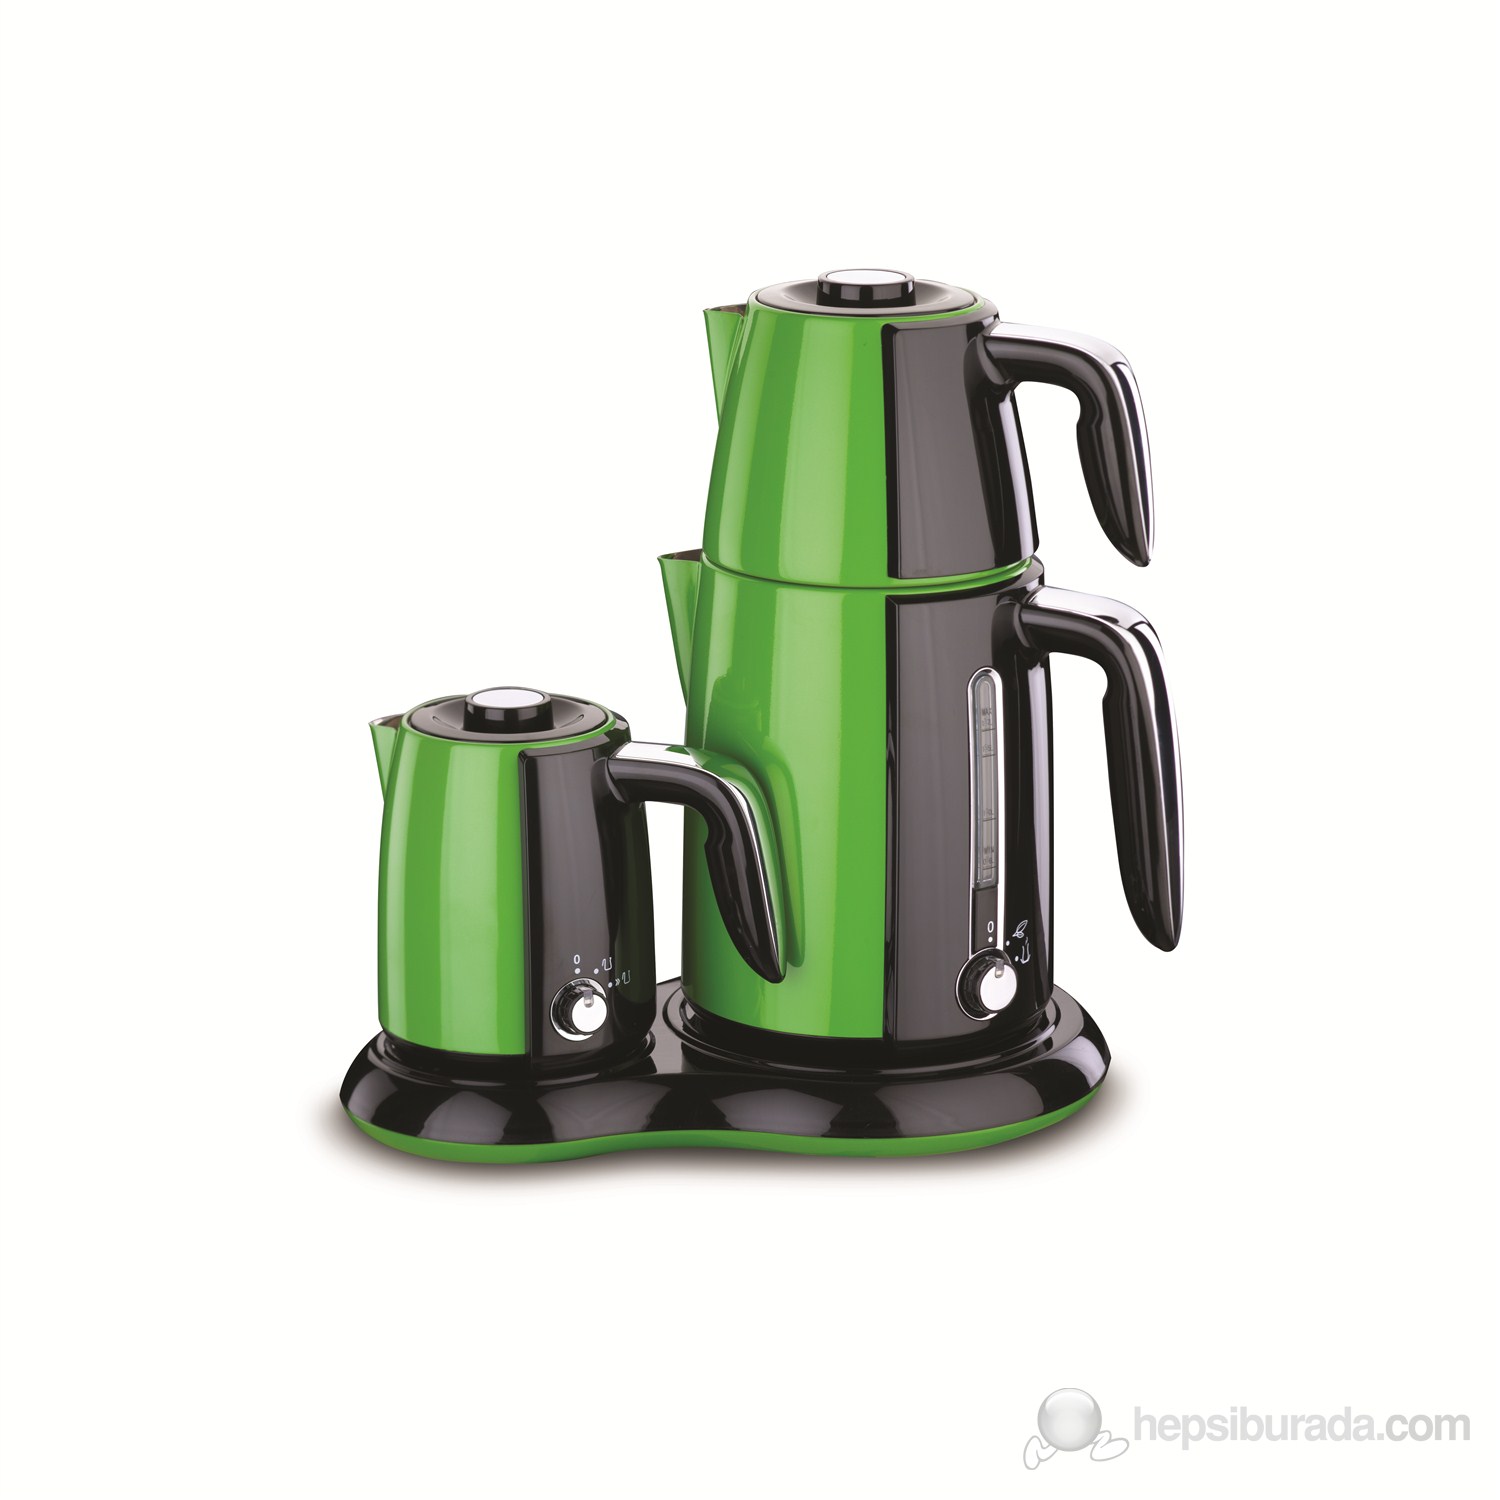 Korkmaz A 367-02 Çay ve Kahve Makinası Yeşil / Siyah